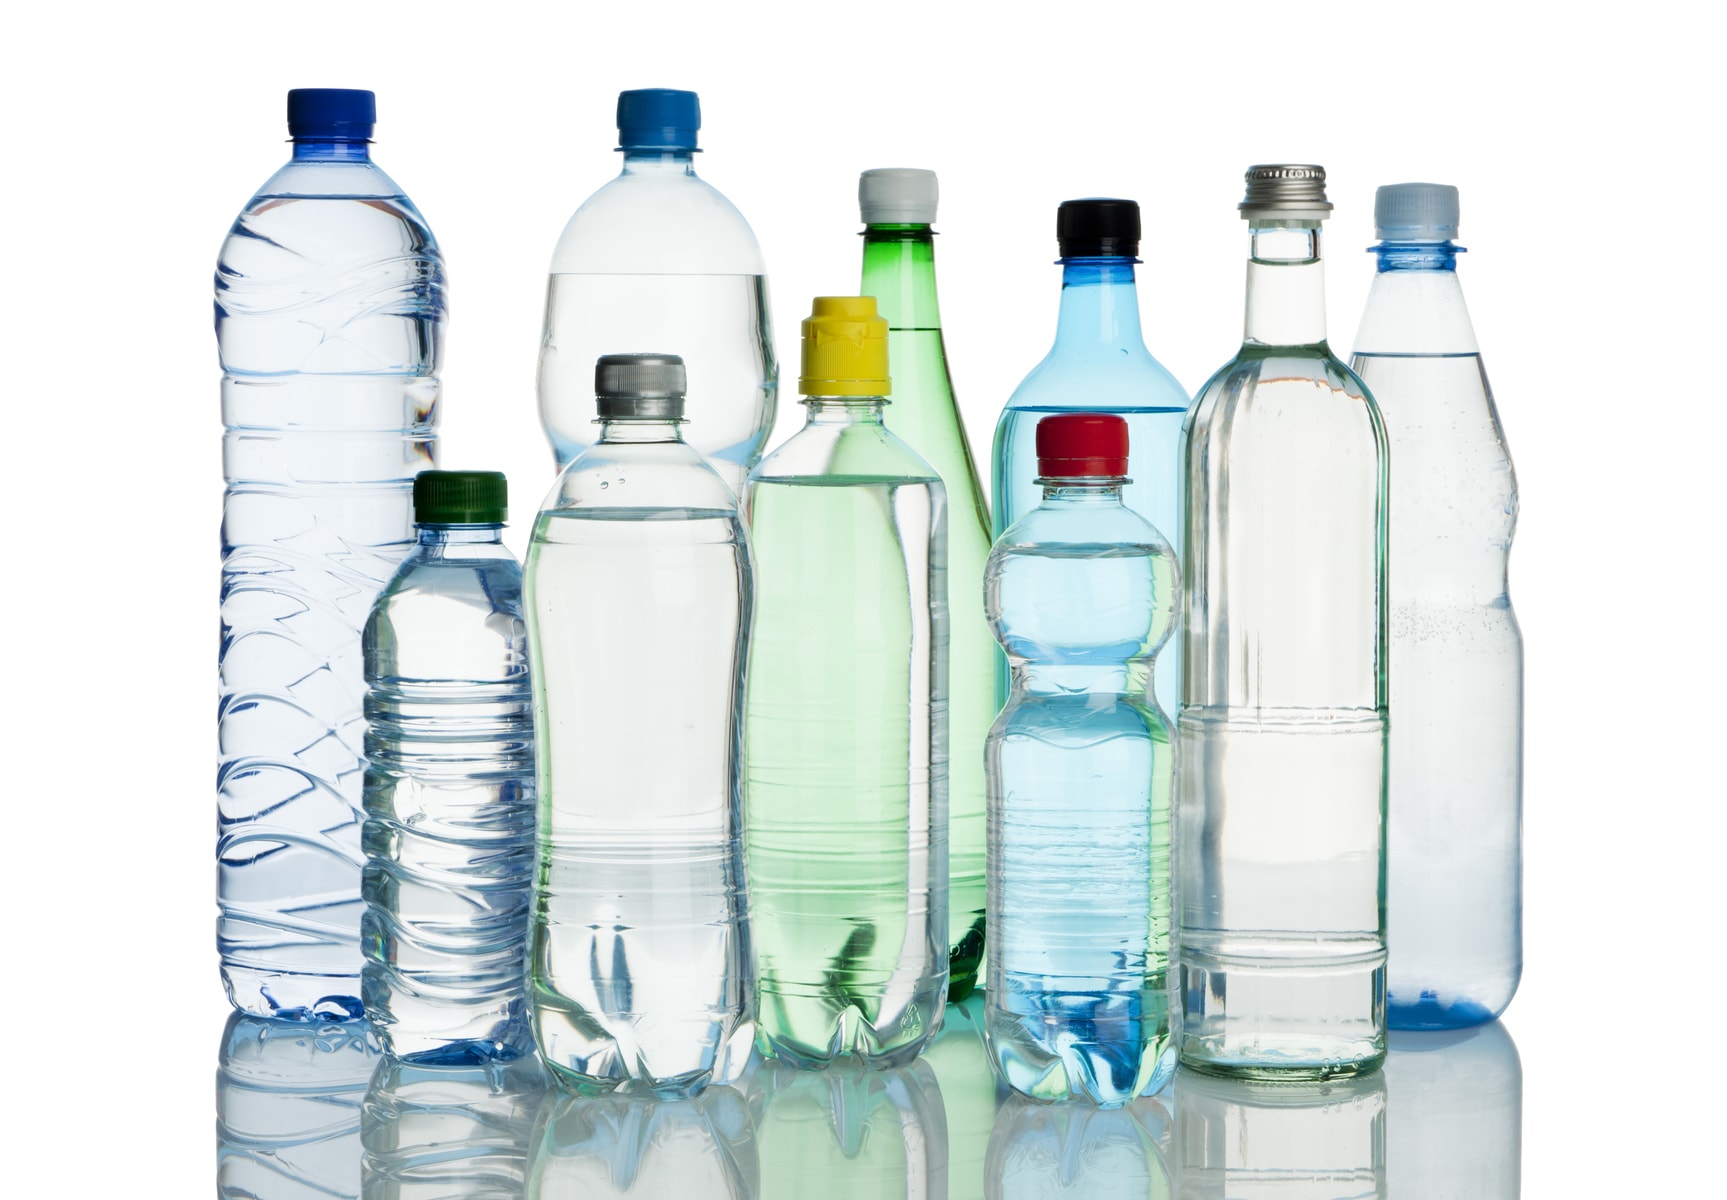 reuse plastic bottles